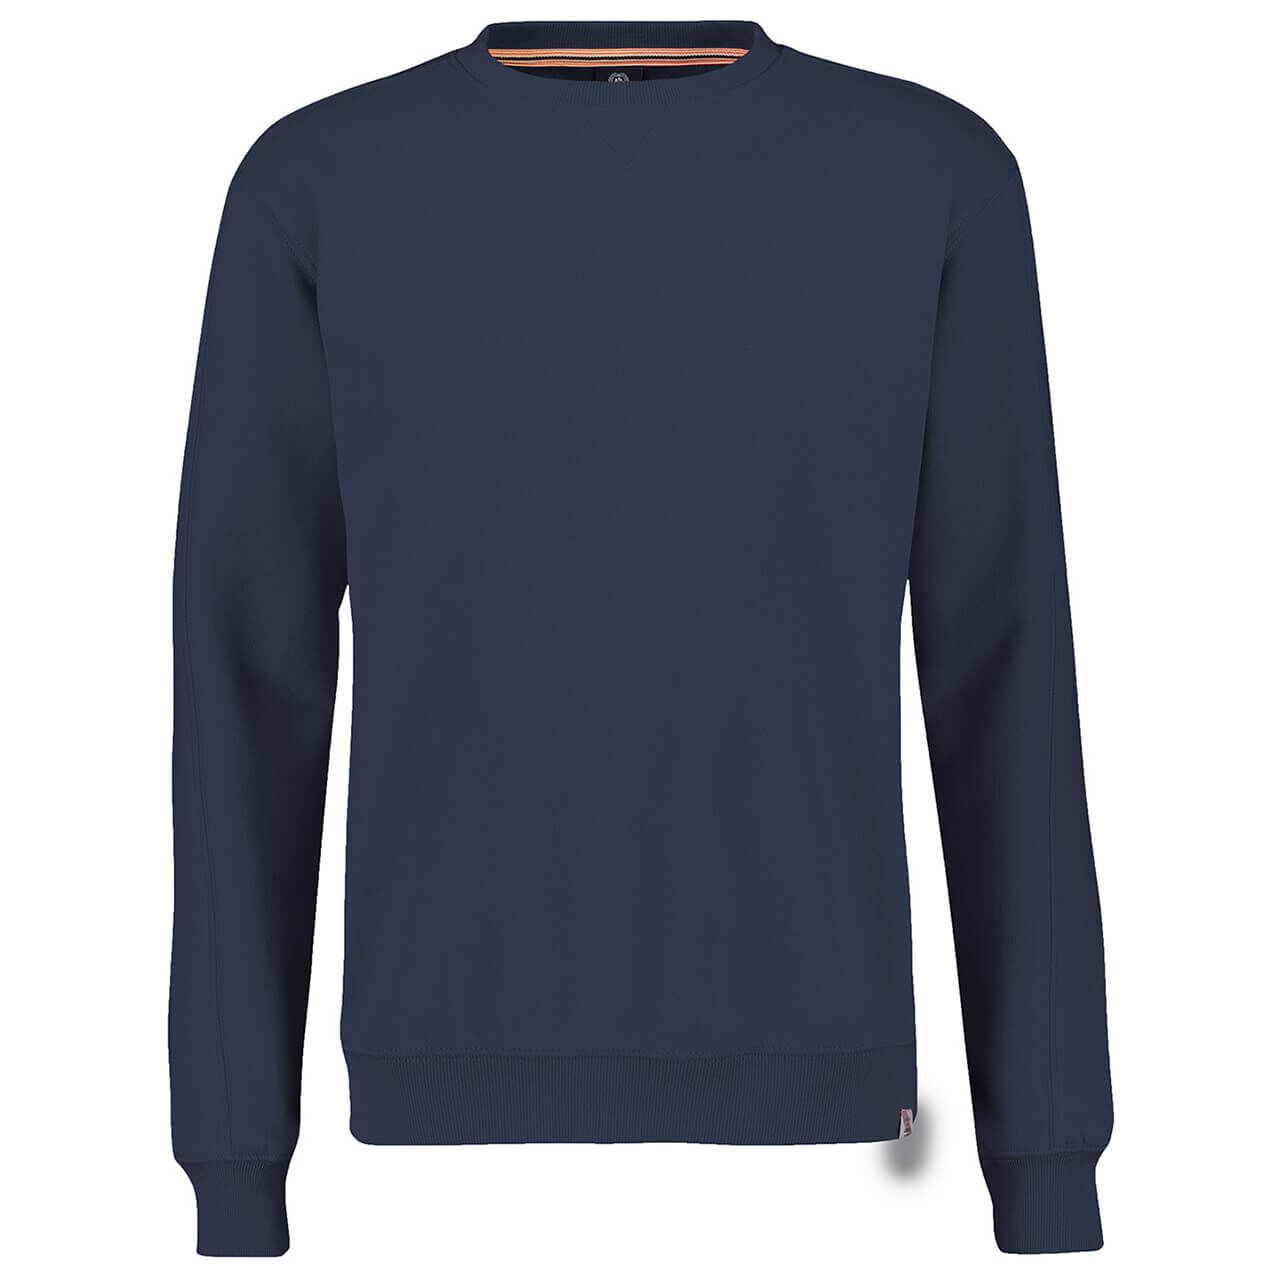 Lerros Sweatshirt für Herren in Dunkelblau, FarbNr.: 478